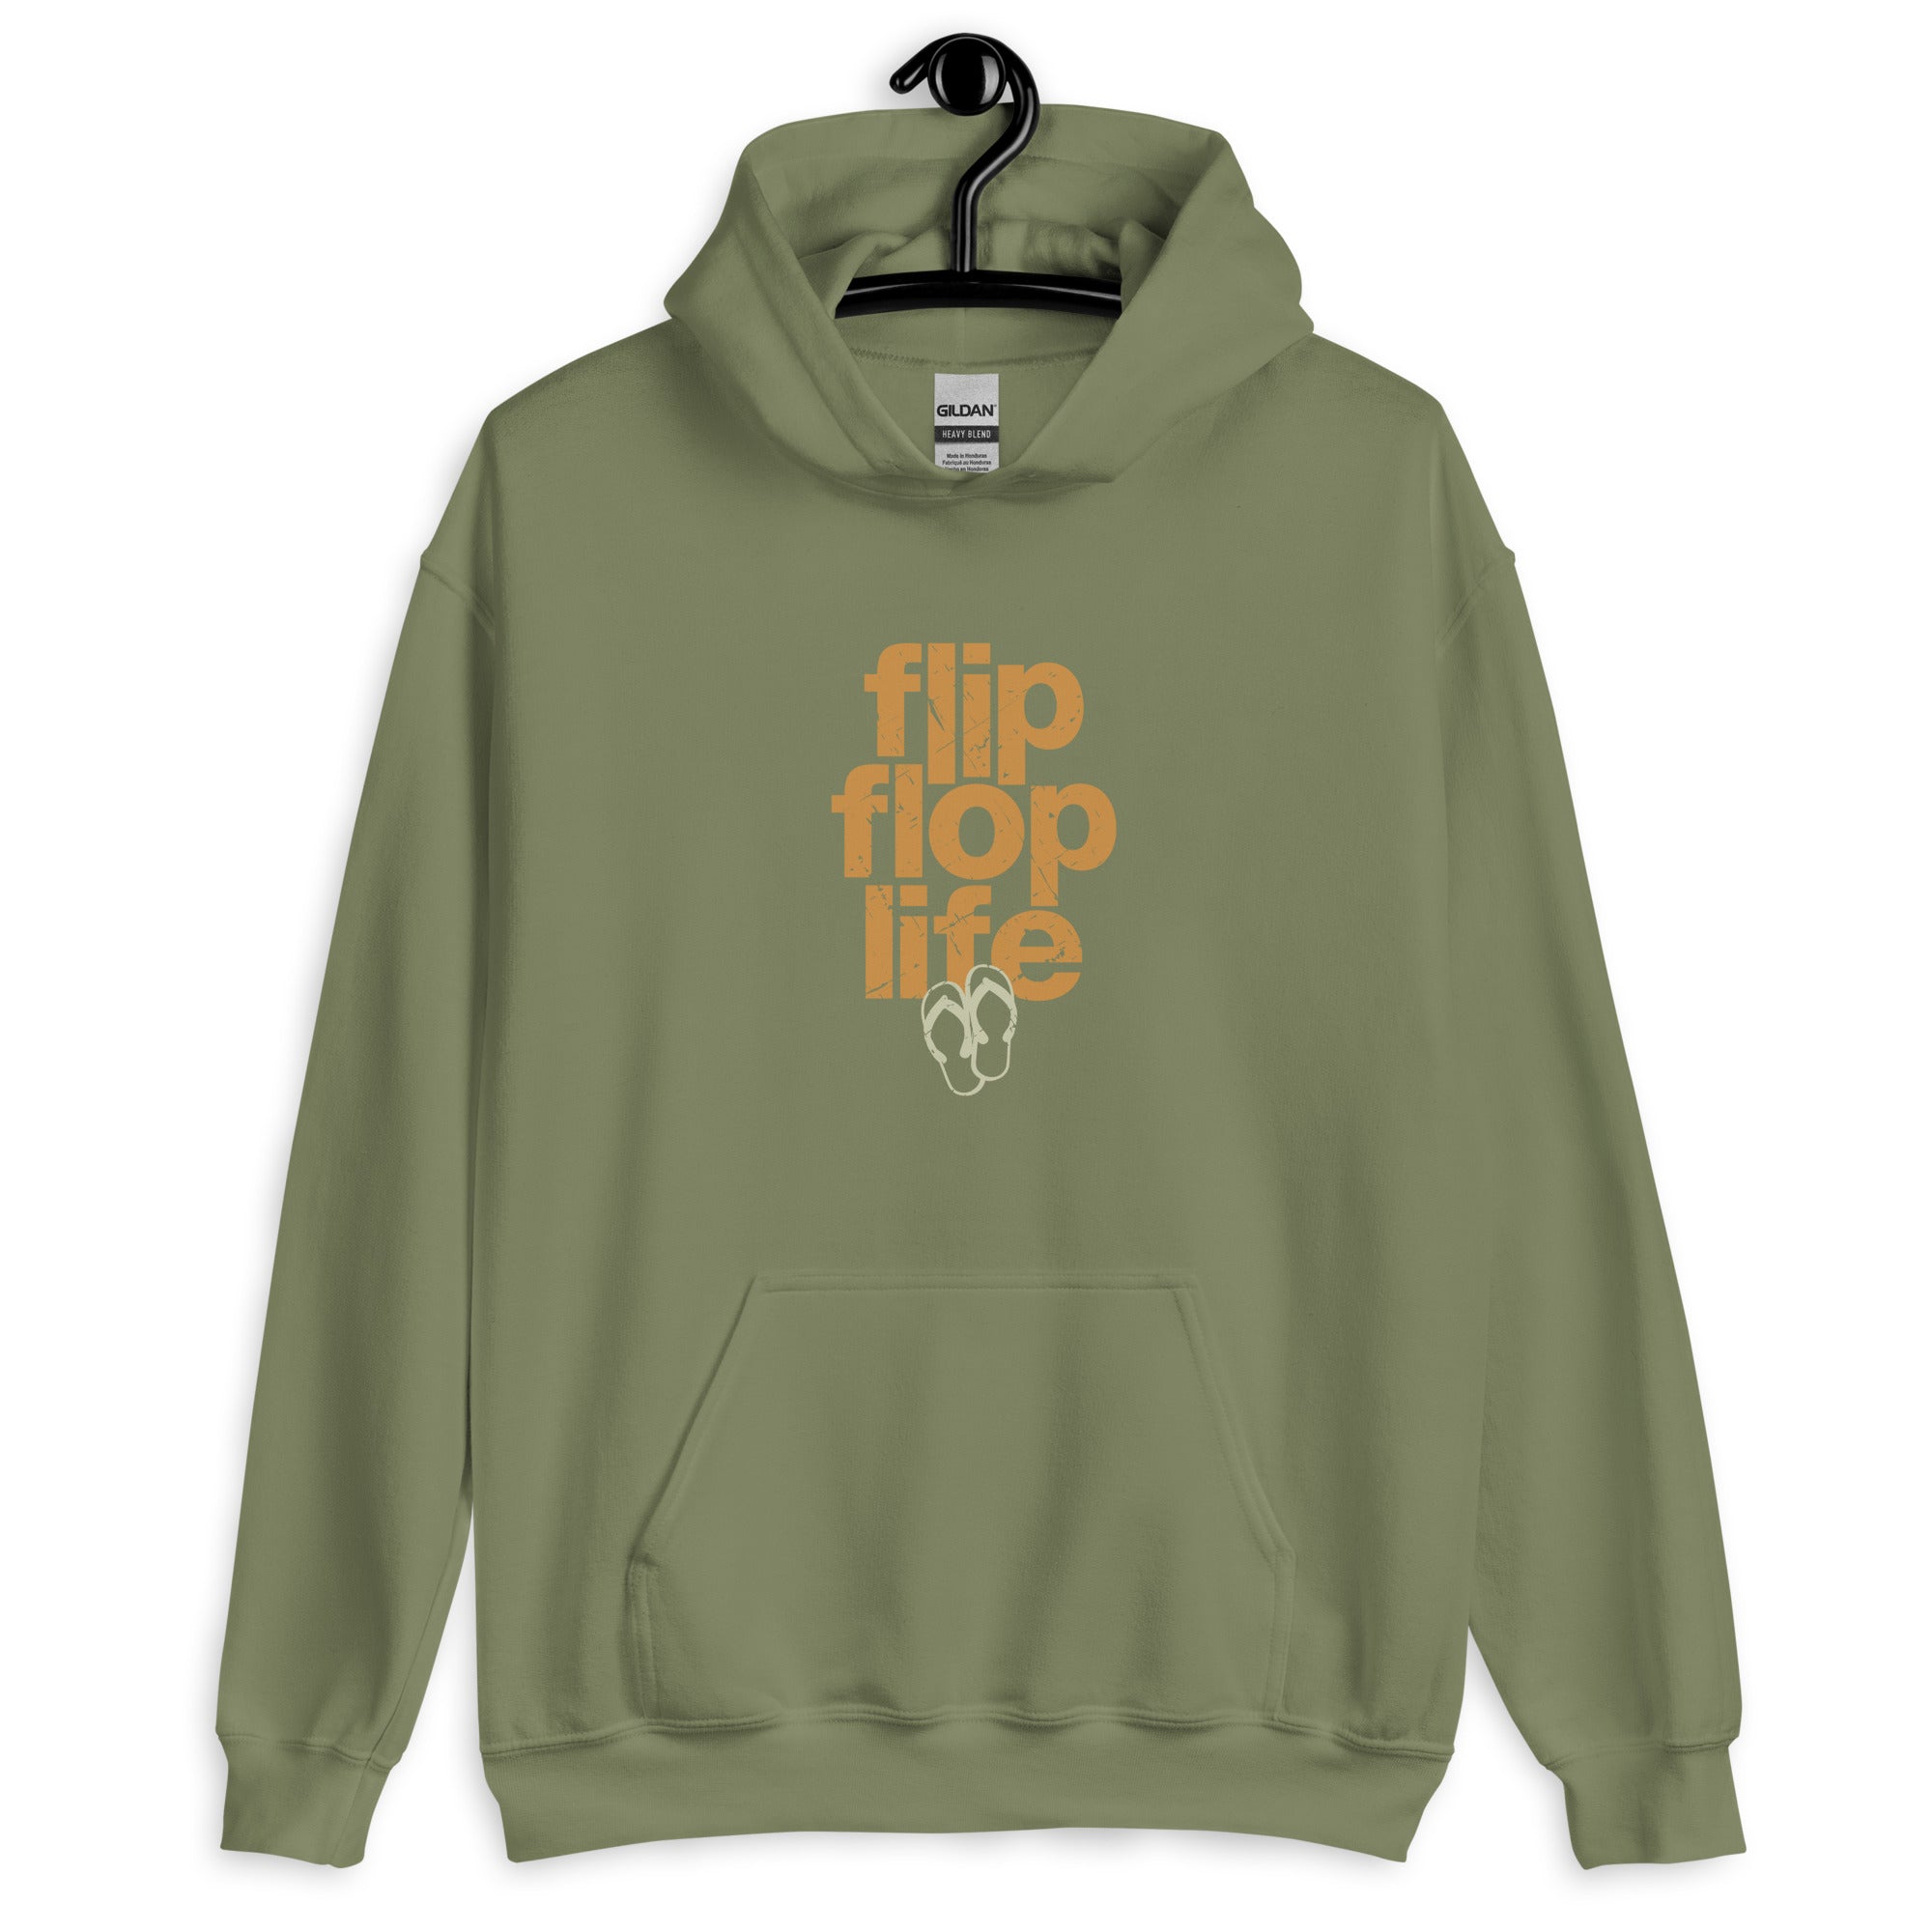 FLIP FLOP LIFE / SLOW DOWN - Unisex Hoodie